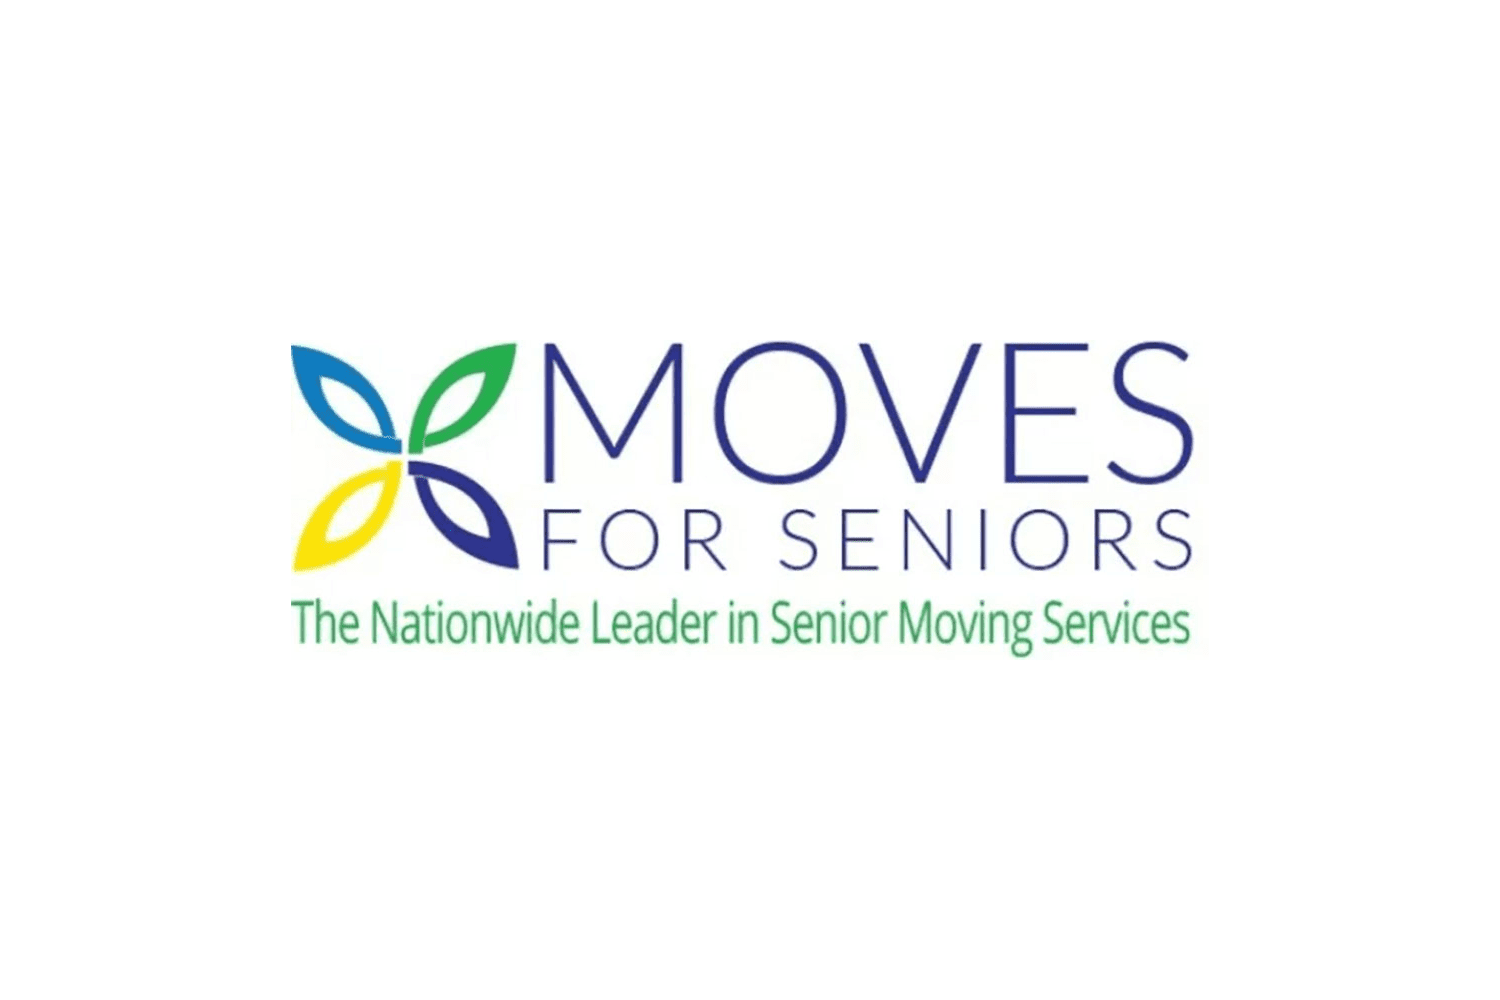 Logotipo da Moves for Seniors em verde, marinho e amarelo